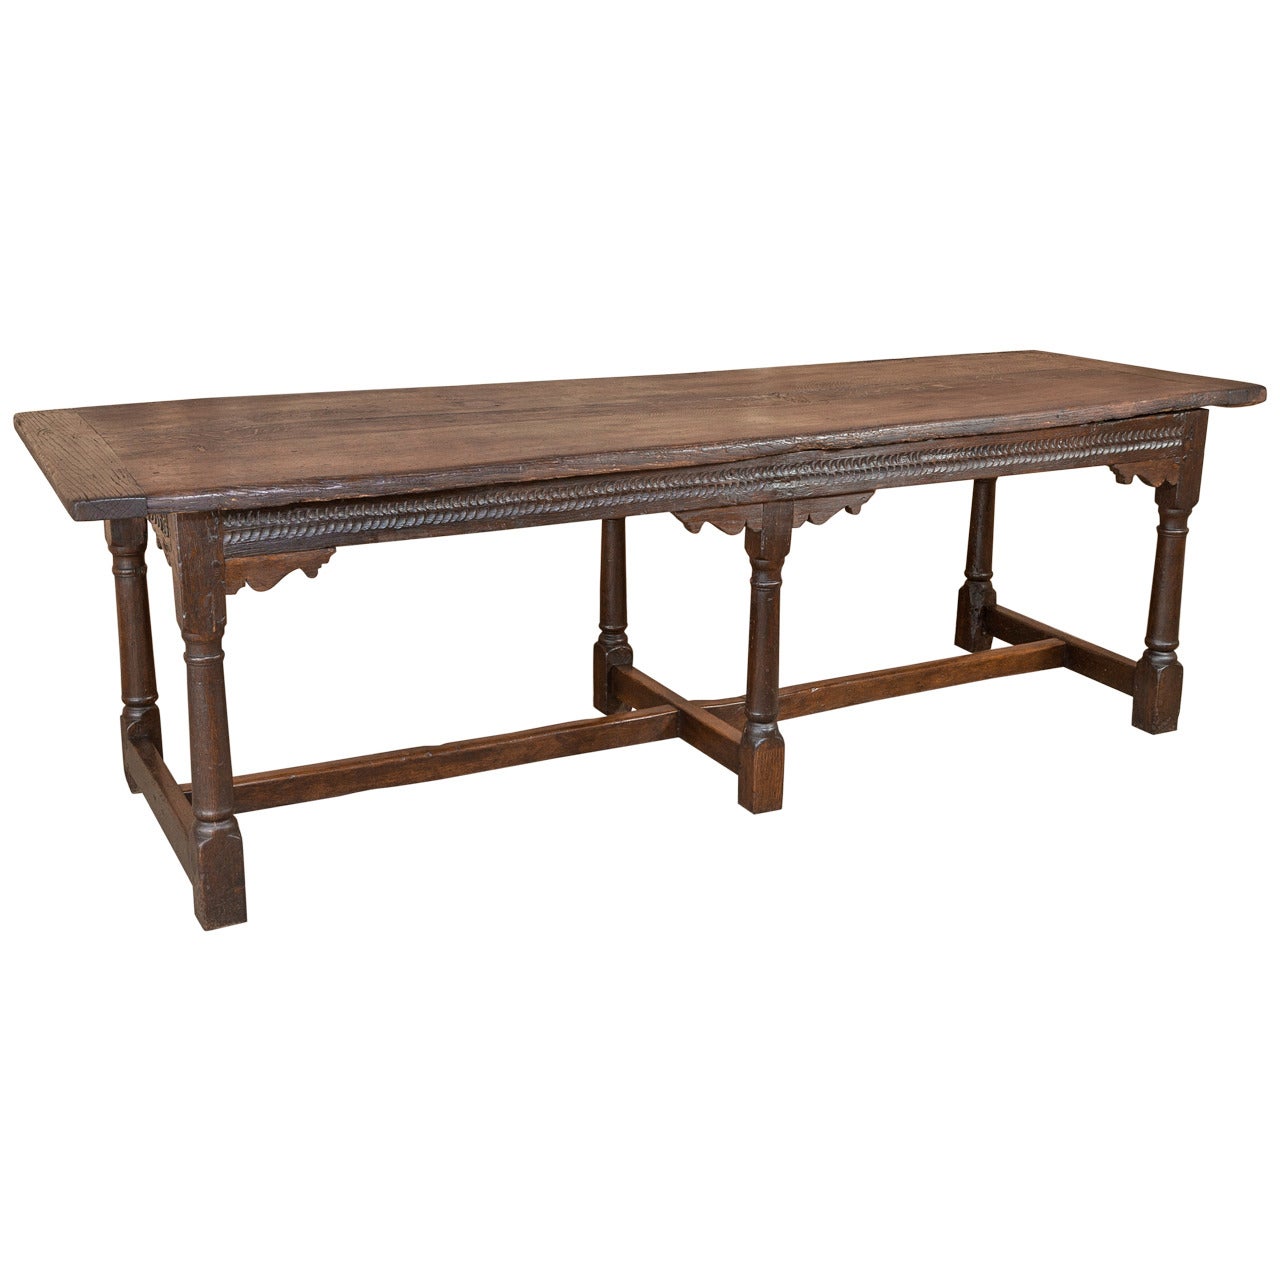 Antique Rustic Renaissance Table